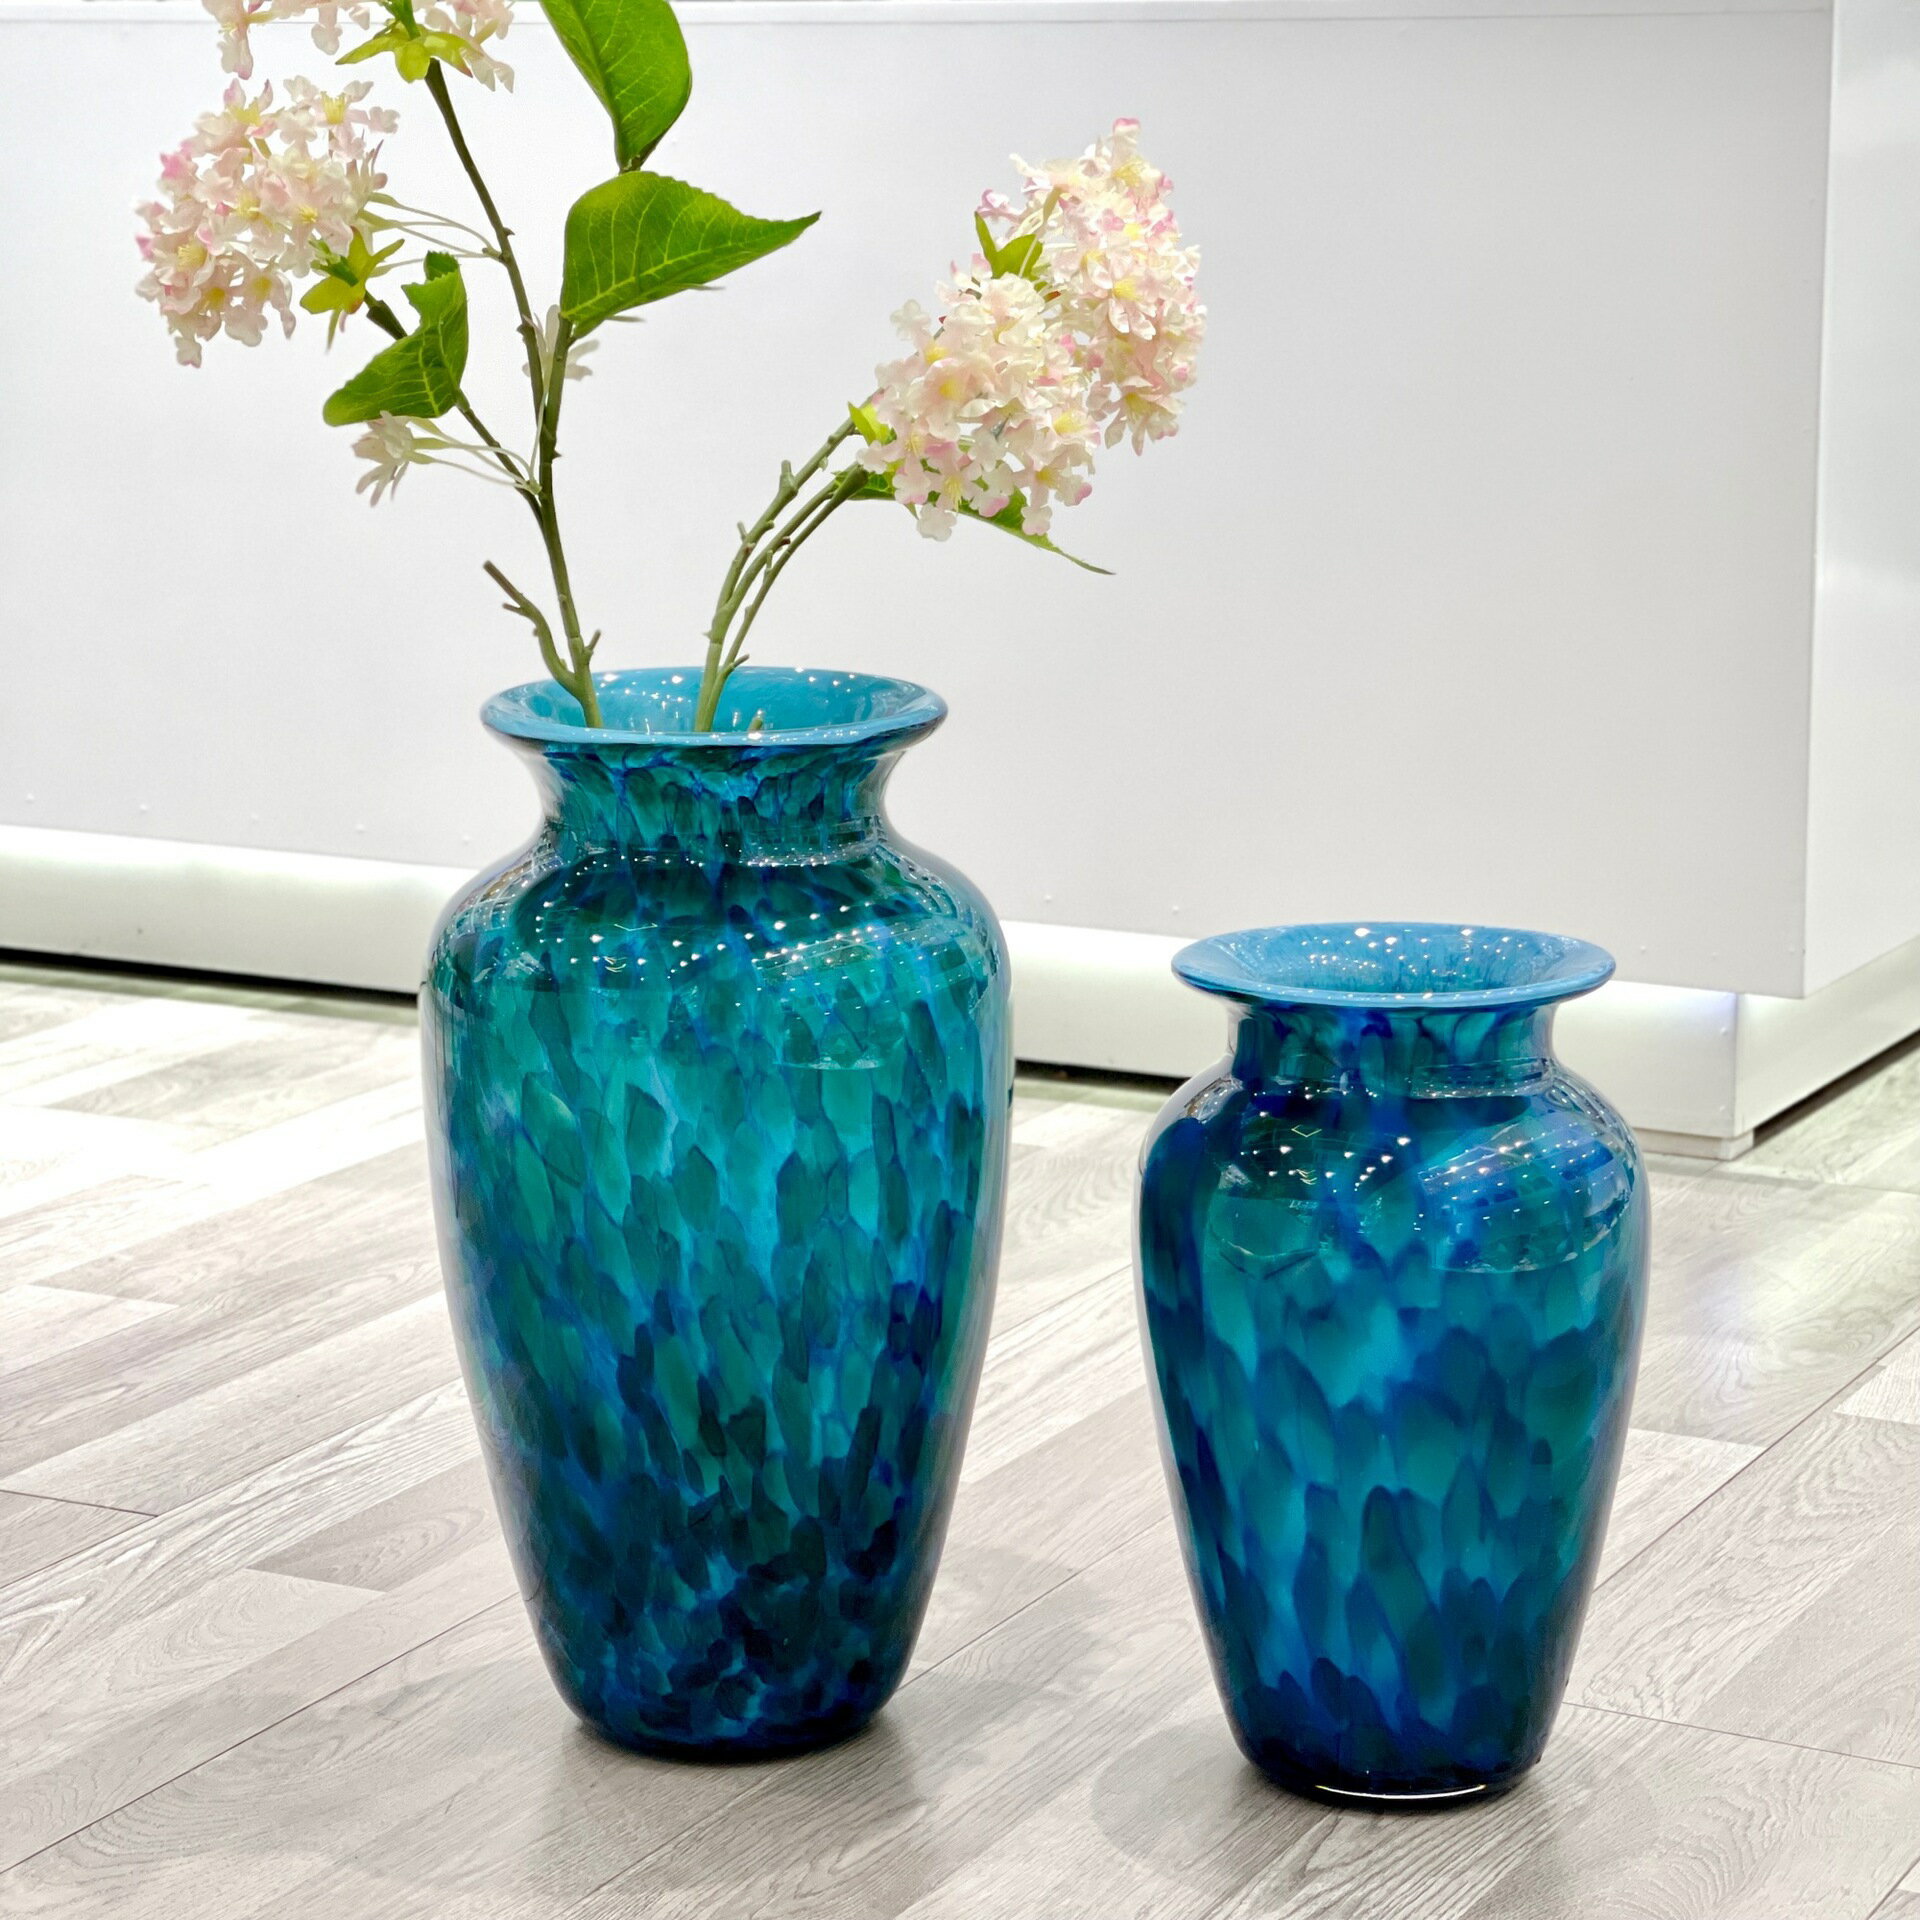 現簡約孔雀藍厚重玻璃花瓶擺件客廳插花客廳玄關樣板間插花琉璃花